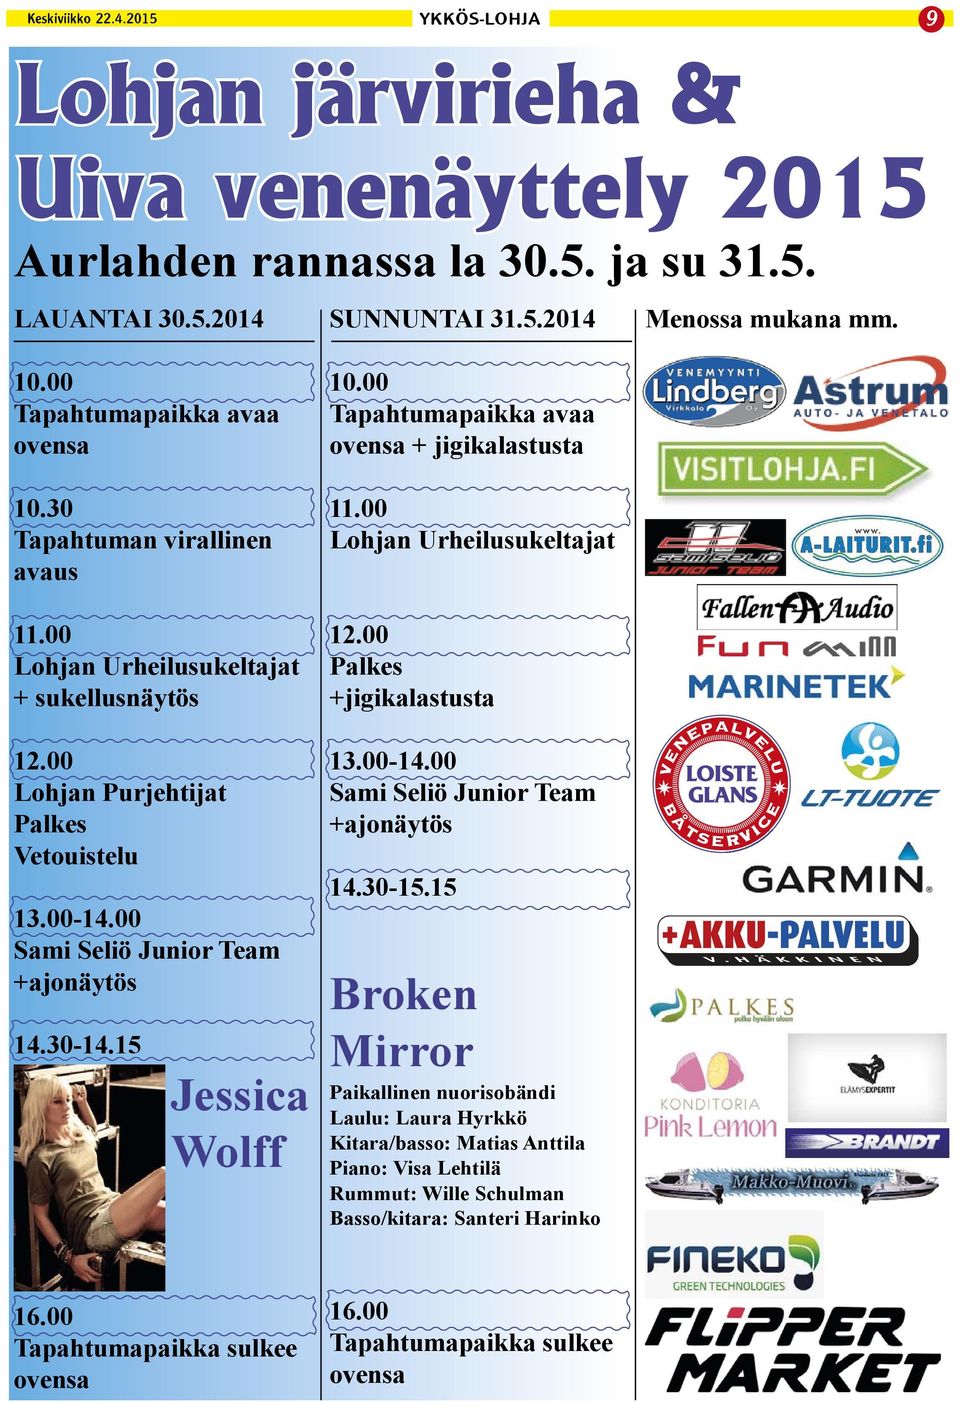 00 Tapahtumapaikka avaa ovensa + jigikalastusta 11.00 Lohjan Urheilusukeltajat 12.00 Palkes +jigikalastusta 13.00-14.00 Sami Seliö Junior Team +ajonäytös 14.30-15.